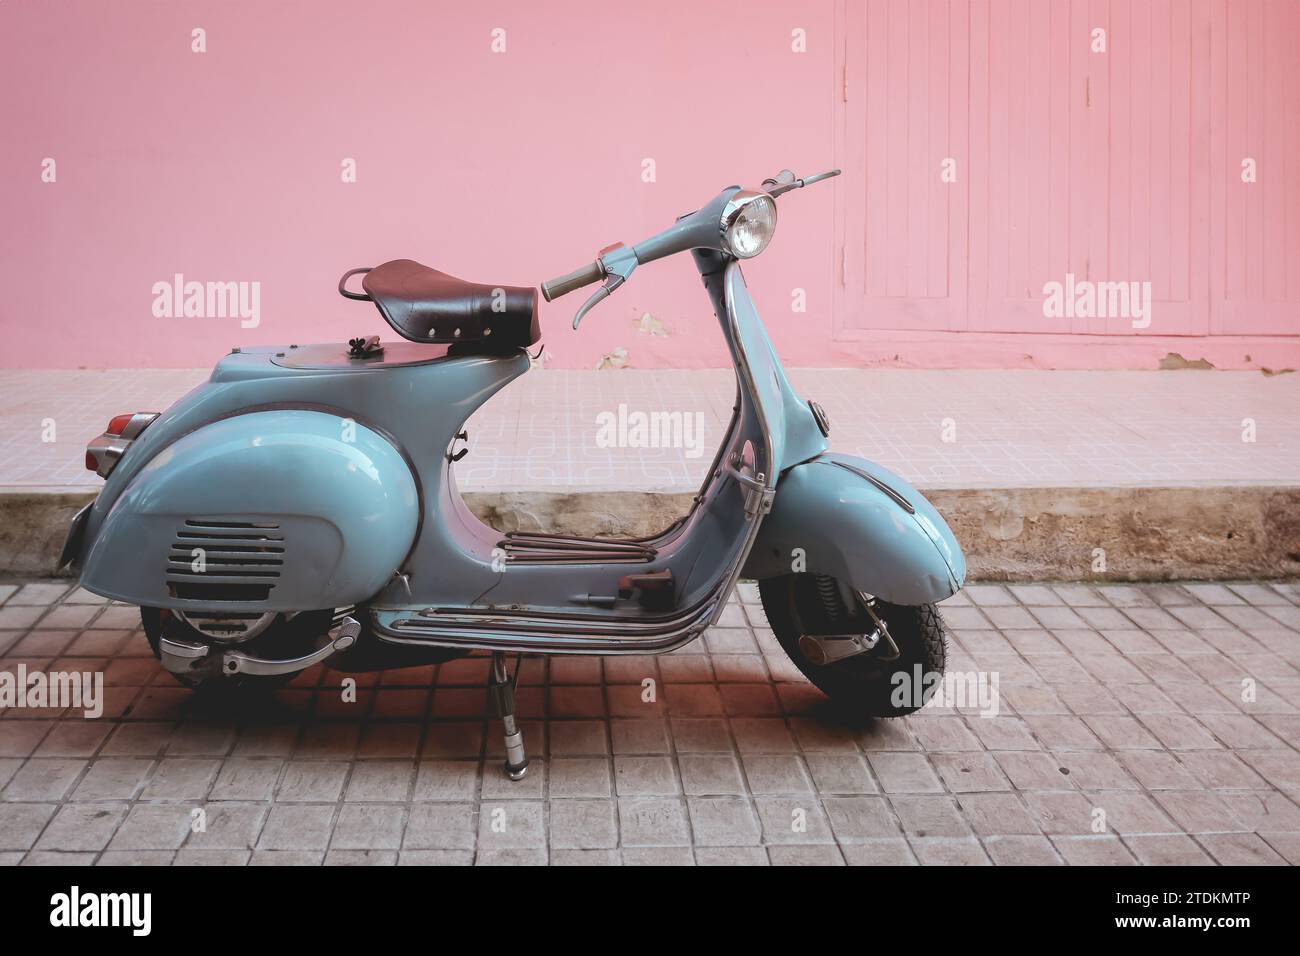 vecchio parcheggio in stile moto d'epoca classico e retrò in stile scooter sulla parete rosa della strada cittadina Foto Stock